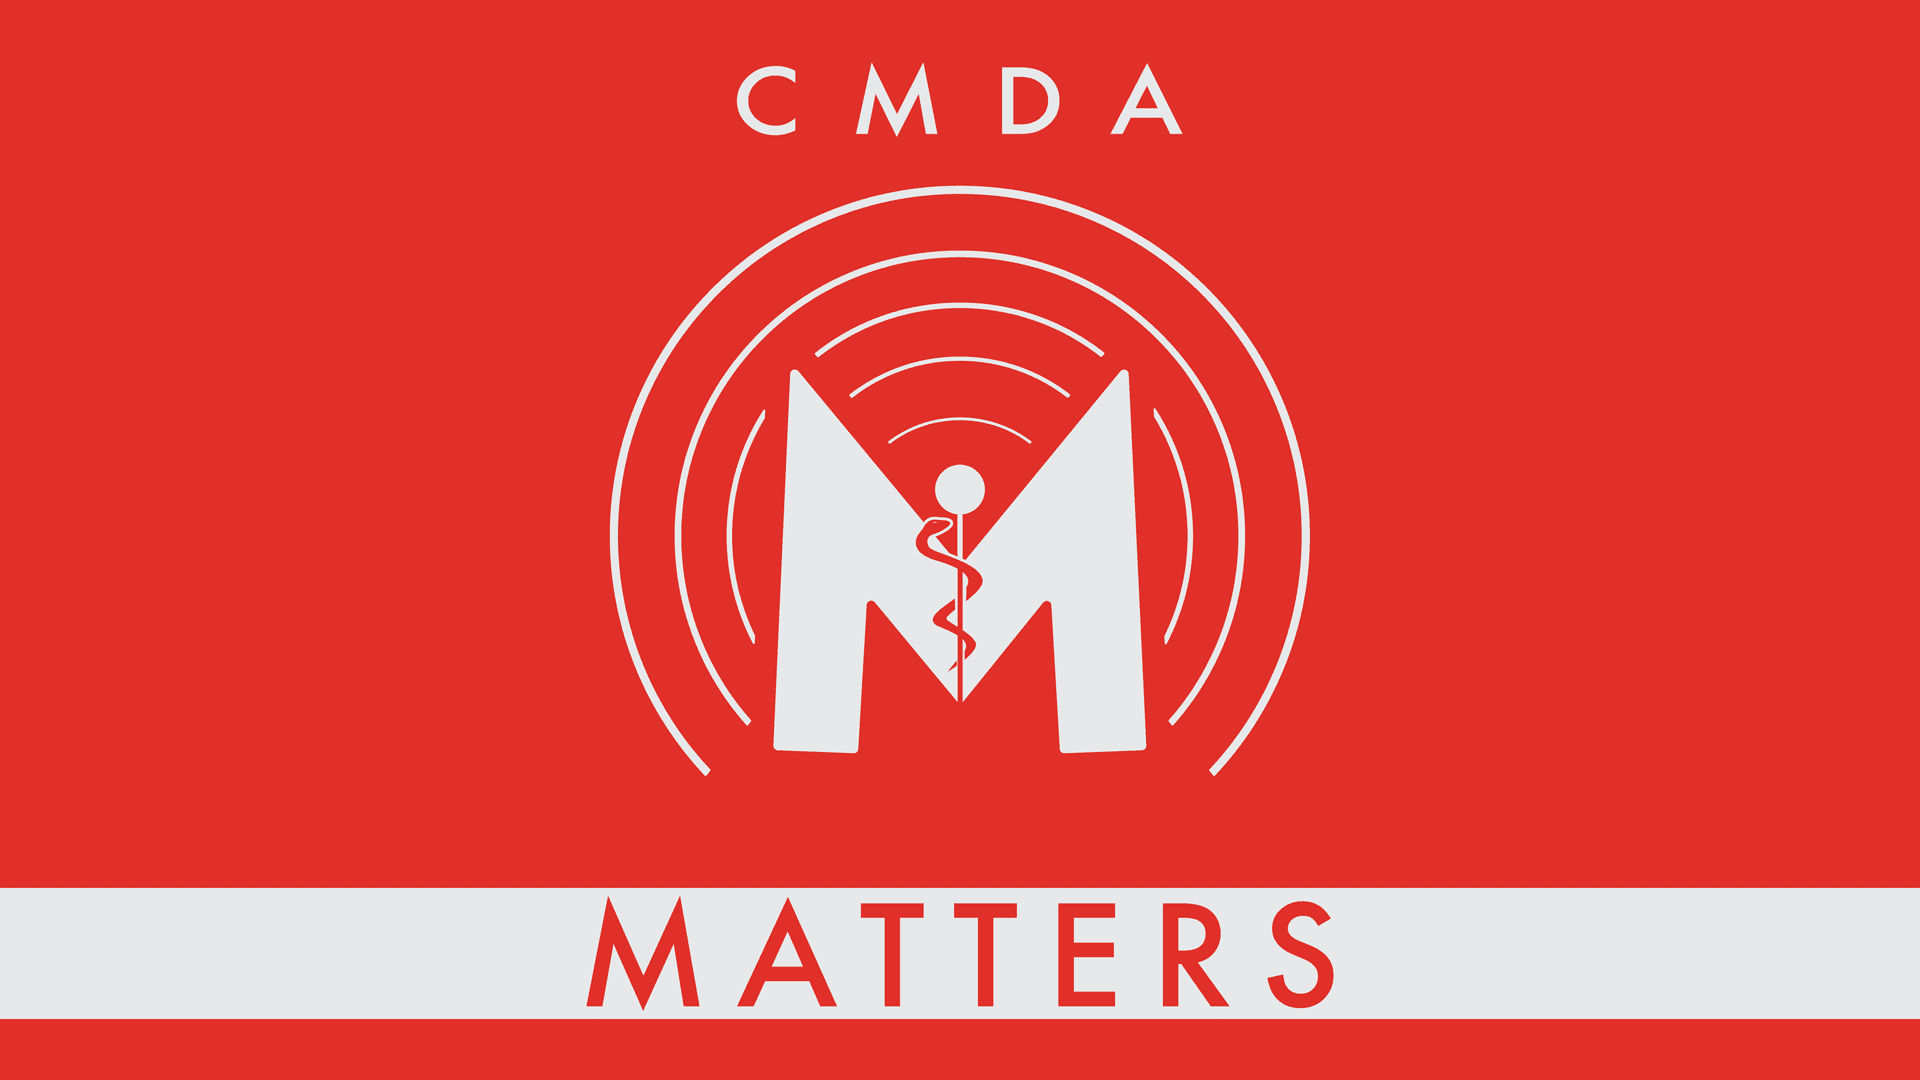 CMDA Matters  Christian Medical Dental Associations